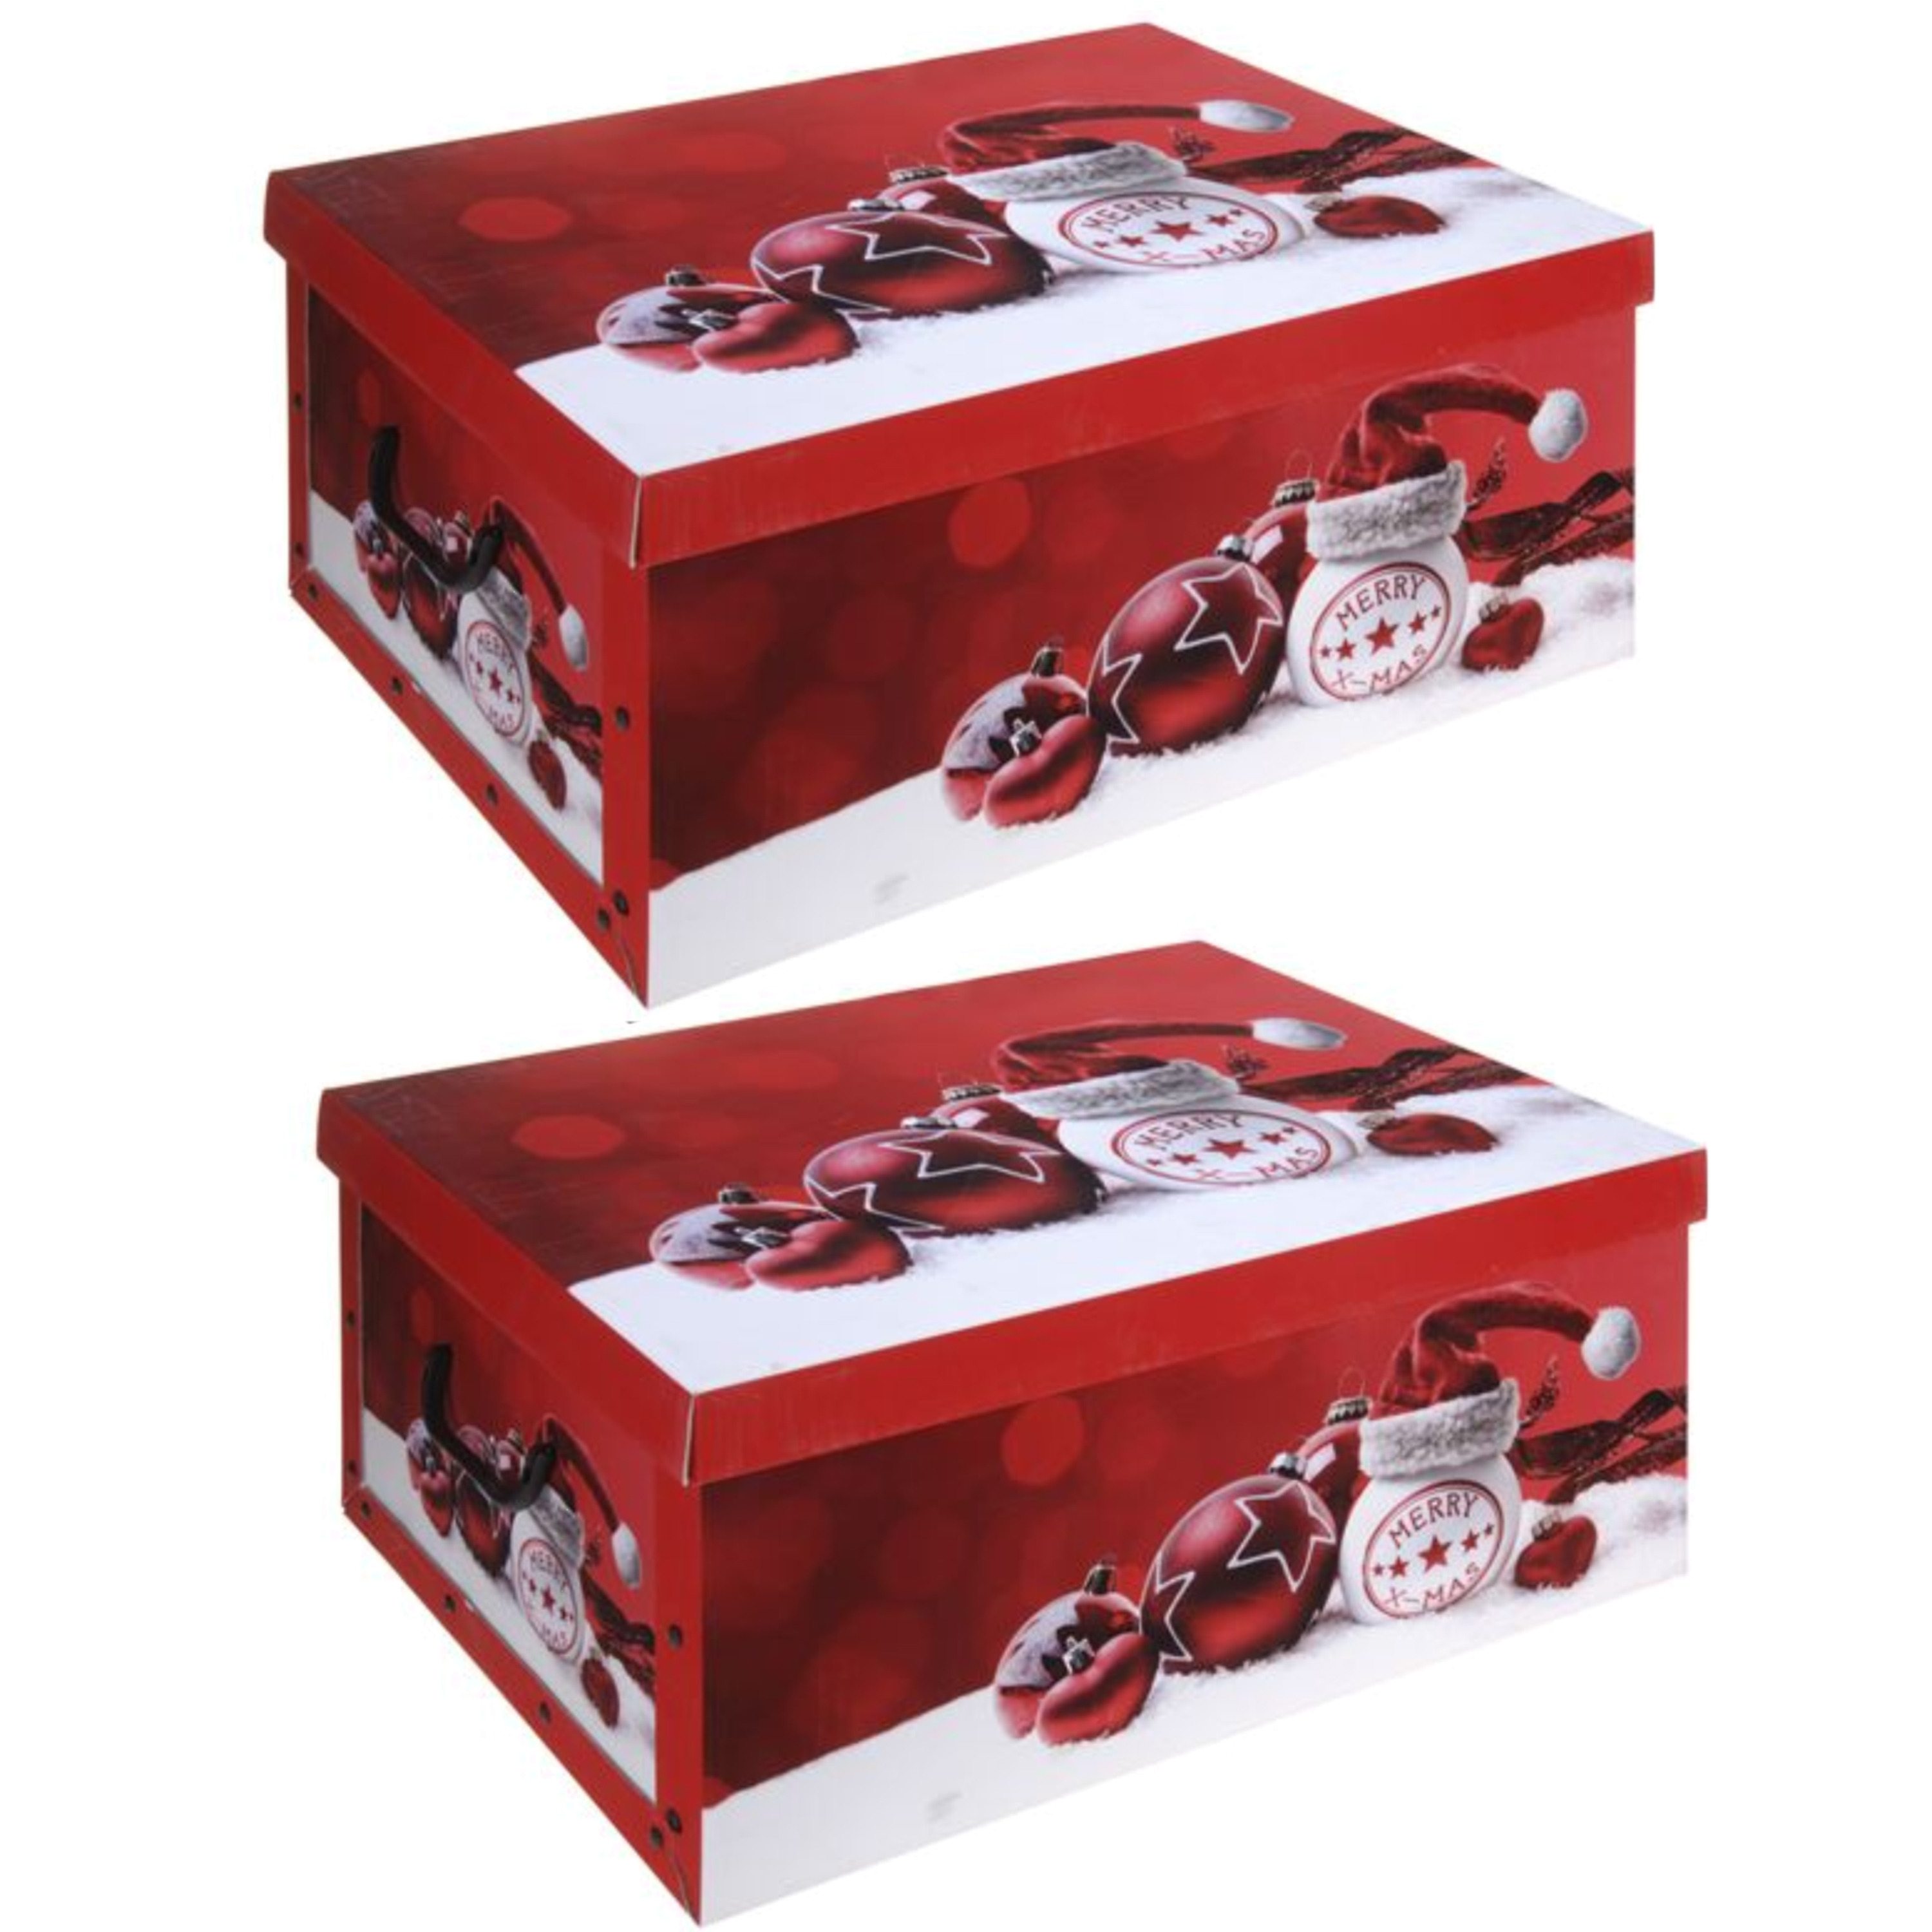 Pakket van 3x stuks rode kerstballen-kerstversiering opbergbox 51 cm